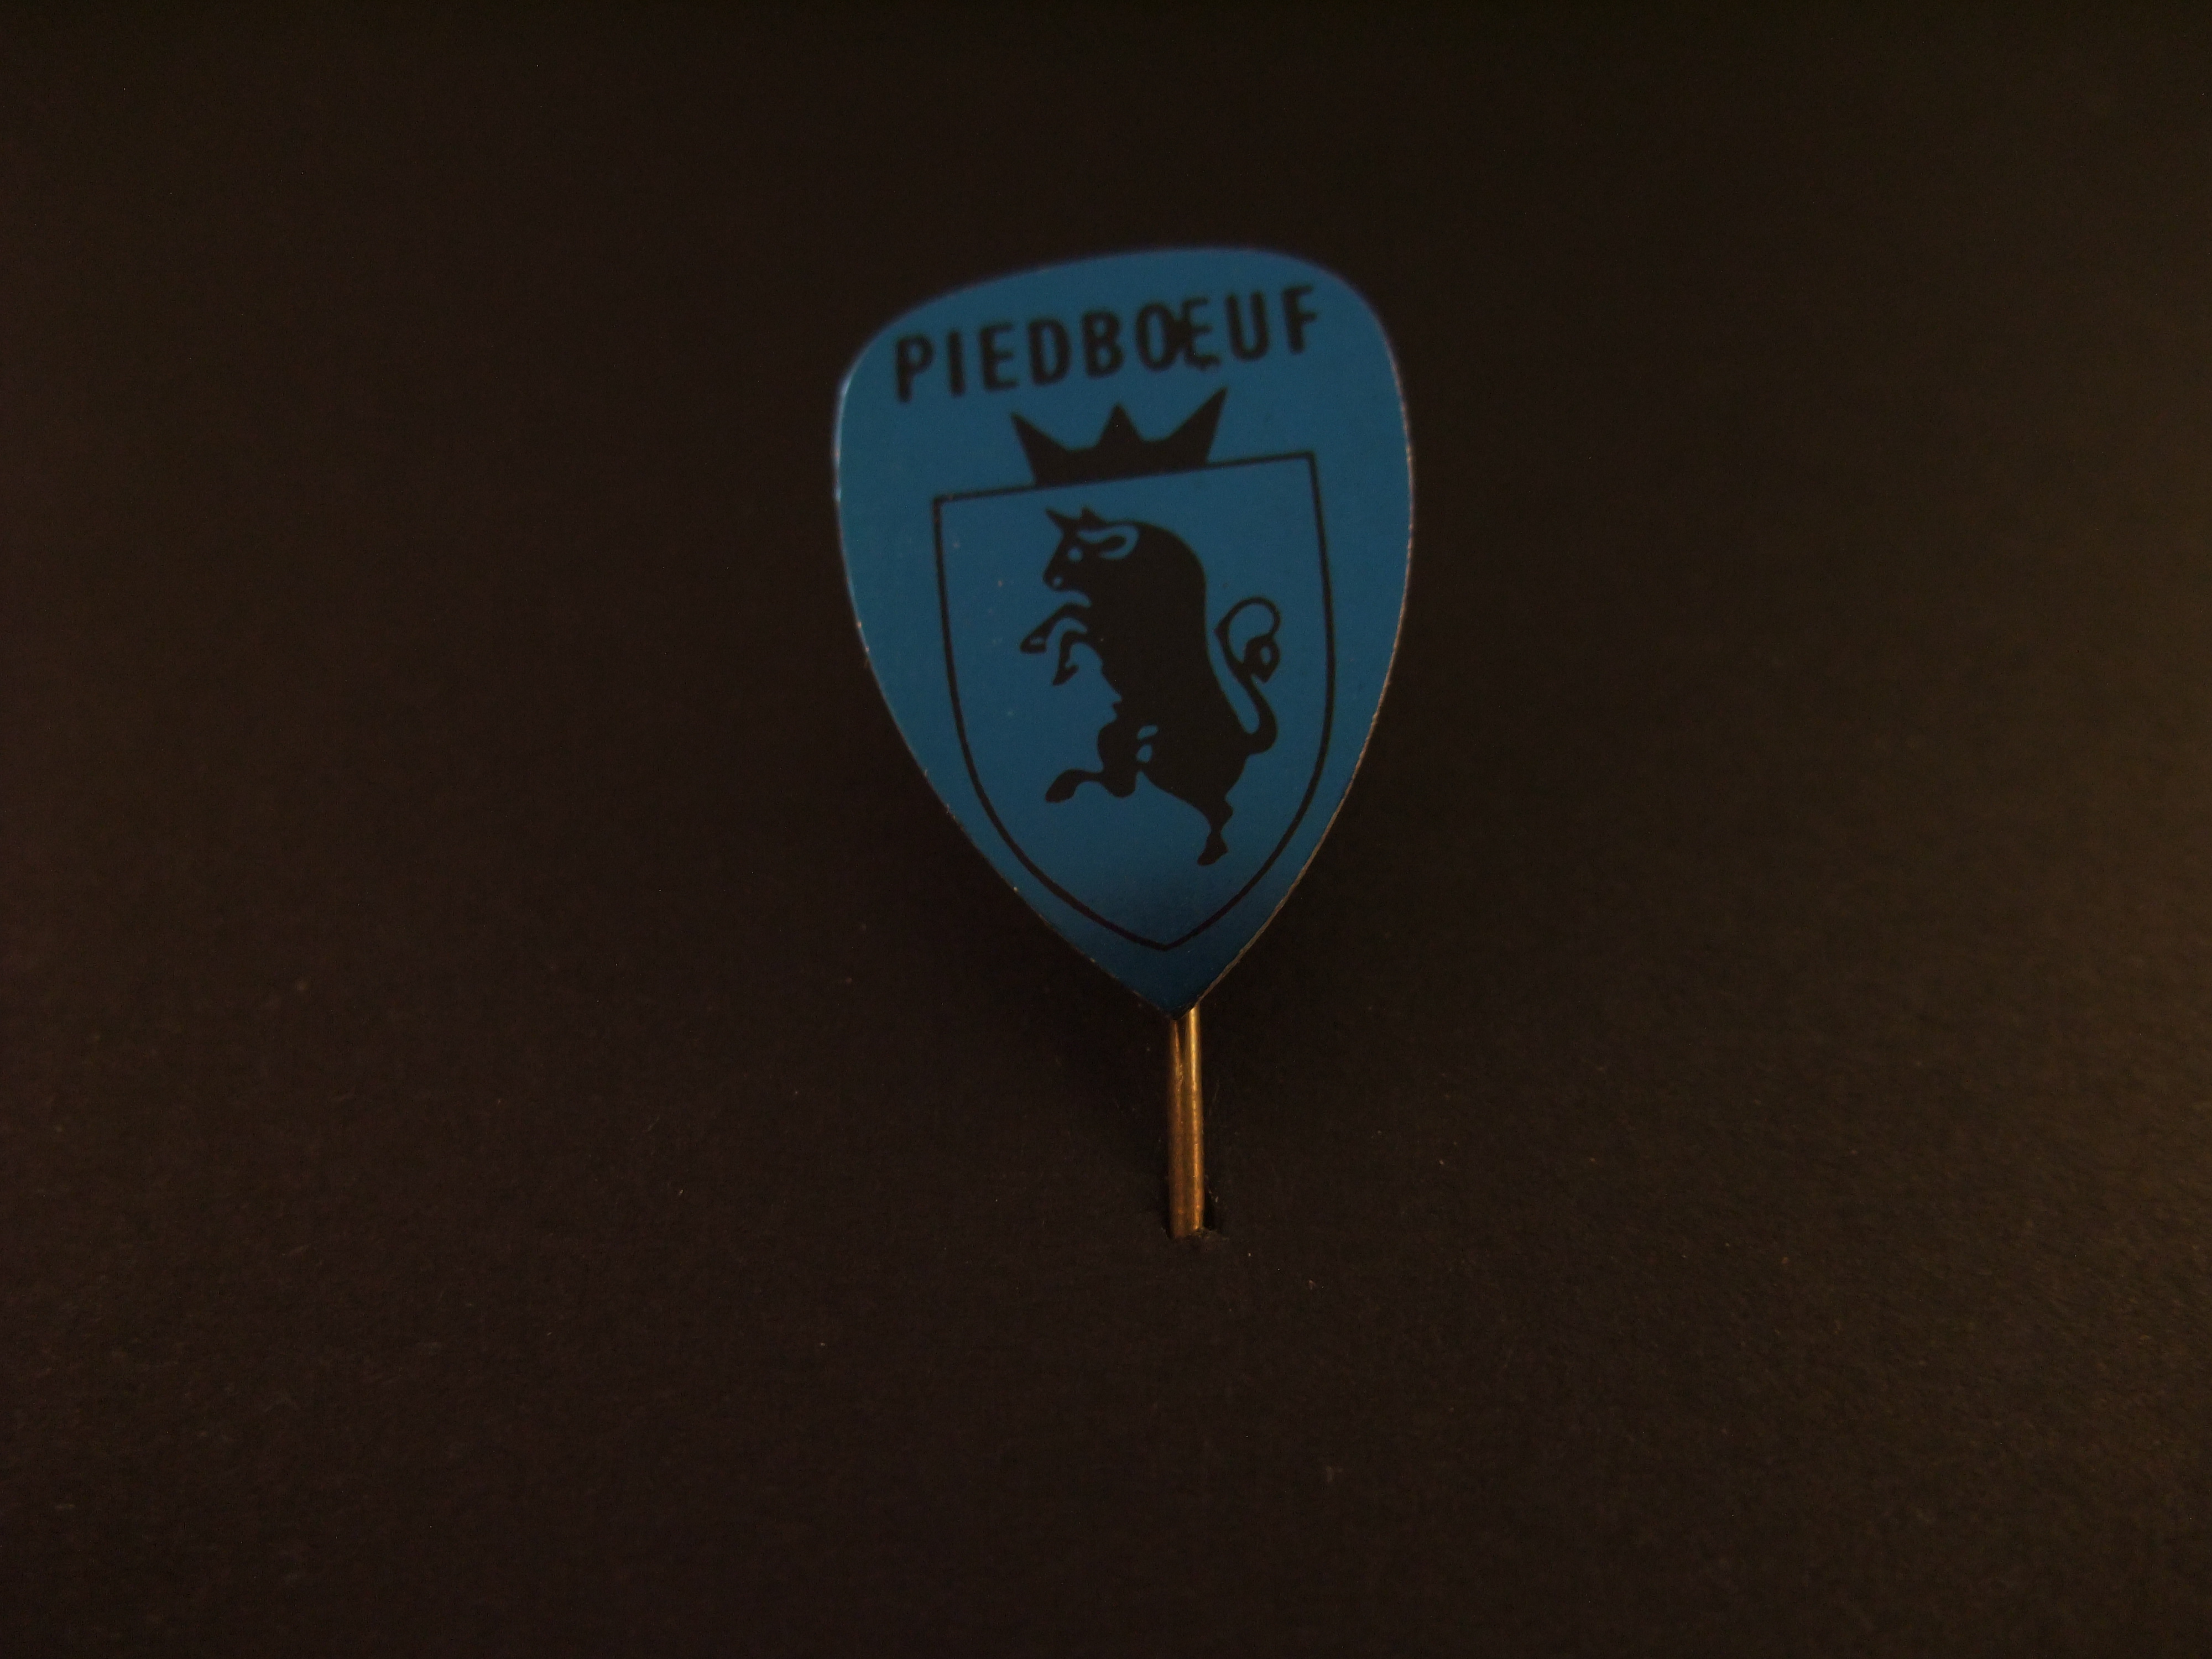 Piedboeuf Belgisch merk van tafelbieren, logo blauw